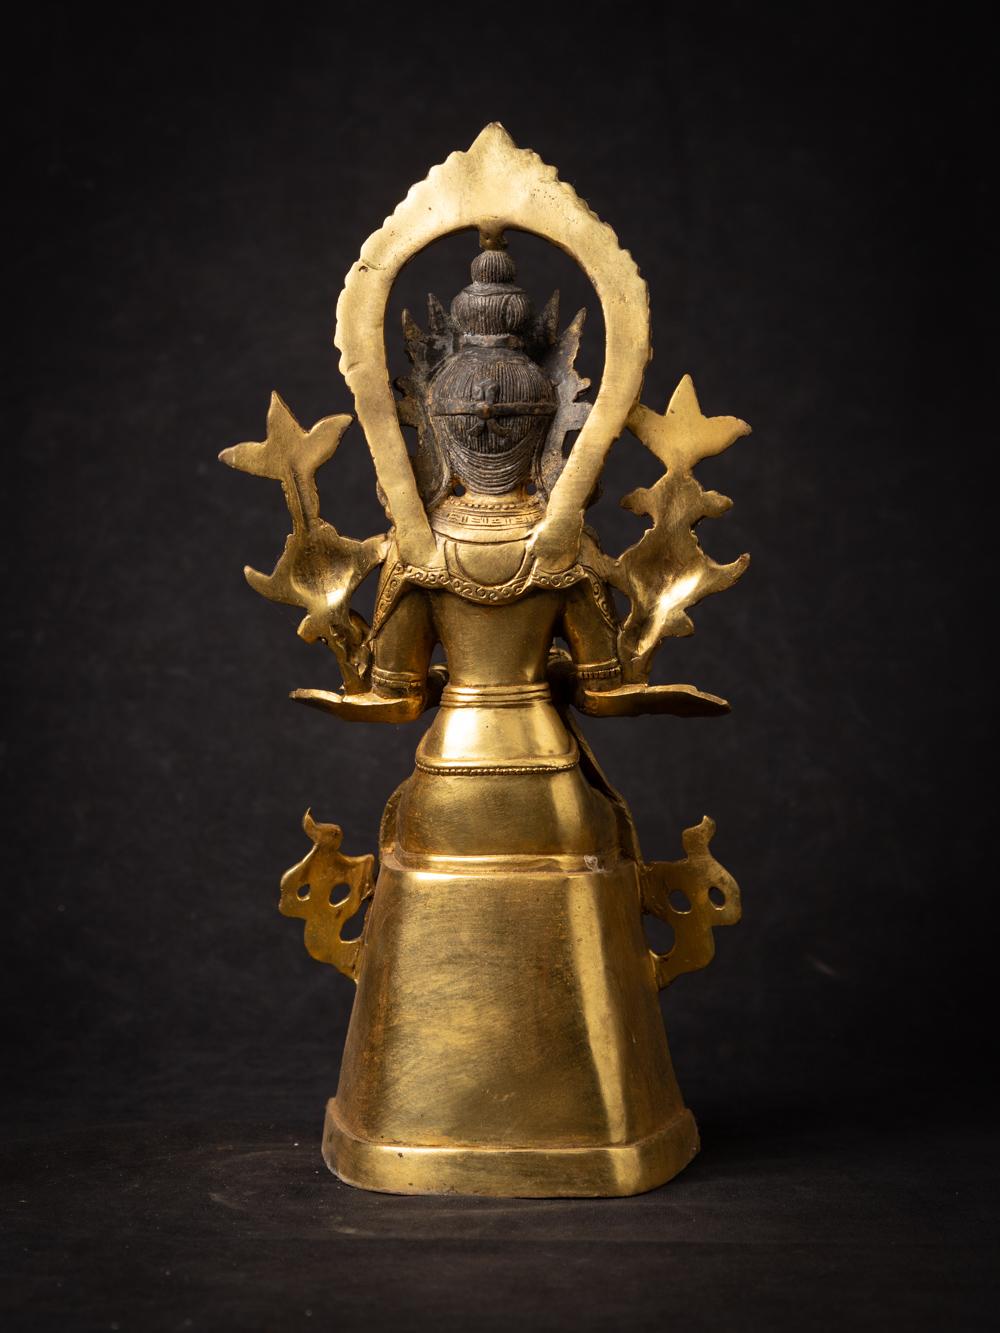 Erleben Sie die göttliche Präsenz einer nepalesischen Maitreya-Buddha-Statue aus Bronze, die mit Ehrfurcht und Hingabe gefertigt wurde. Dieses exquisite Stück aus Bronze hat eine Höhe von 31,5 cm, eine Breite von 14,8 cm und eine Tiefe von 13,5 cm.